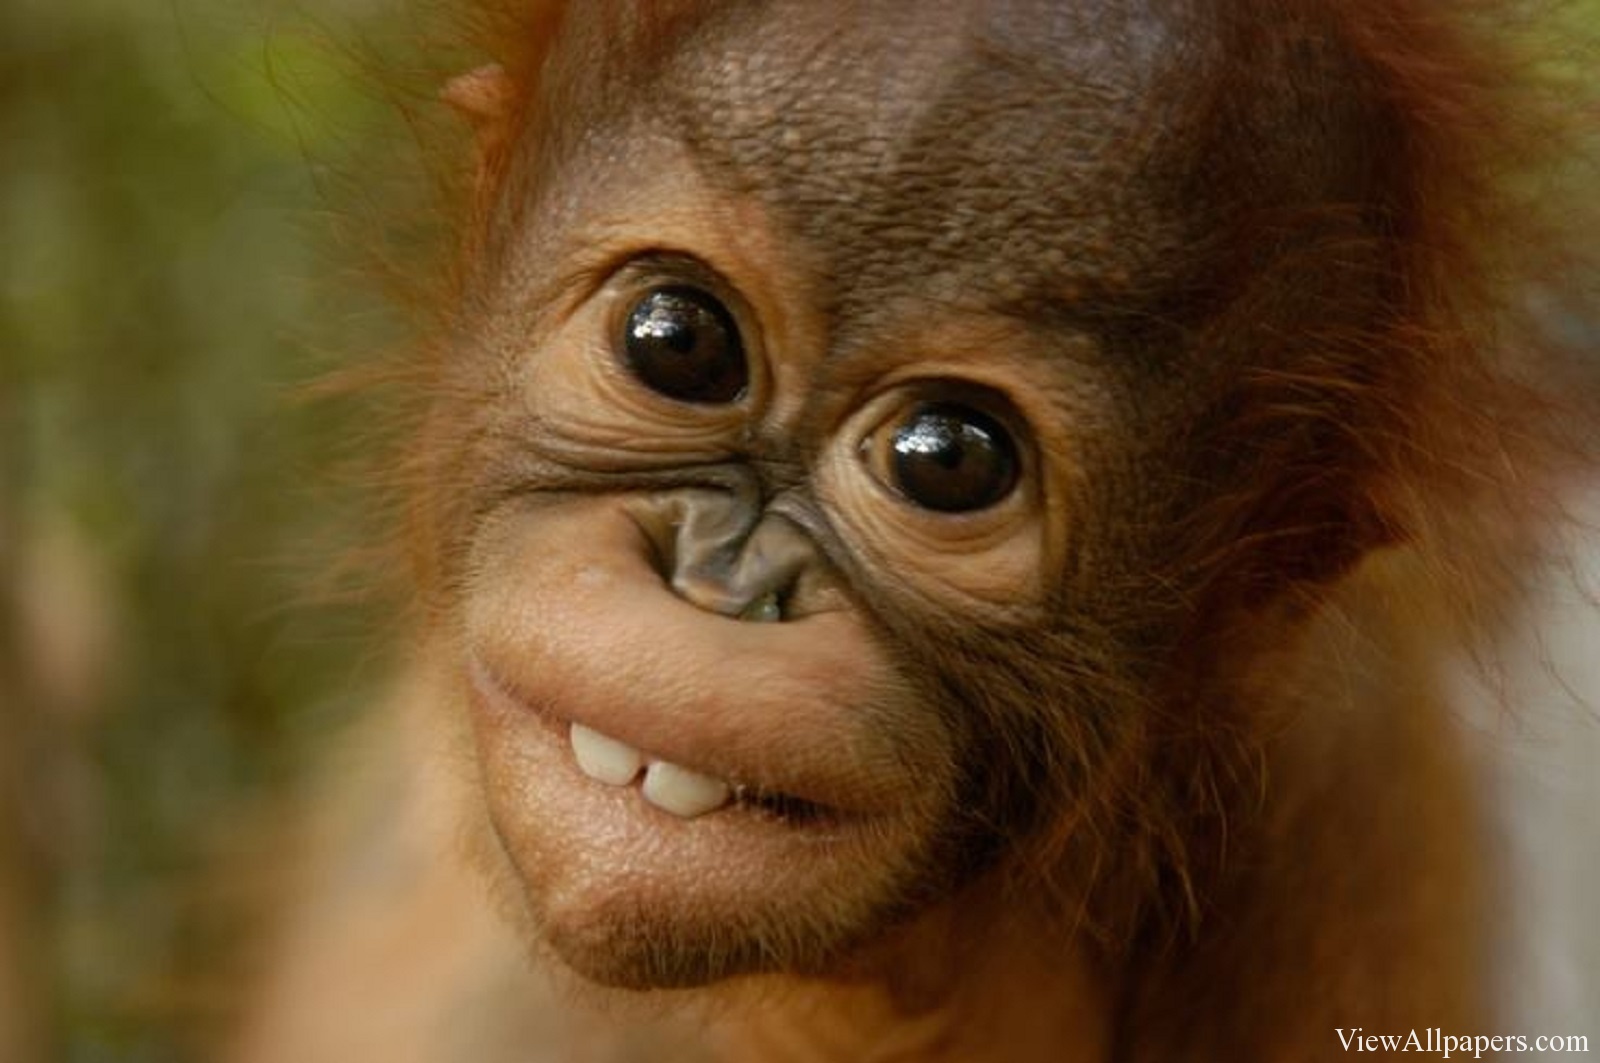  38 Baby  Orangutan  Wallpaper on WallpaperSafari